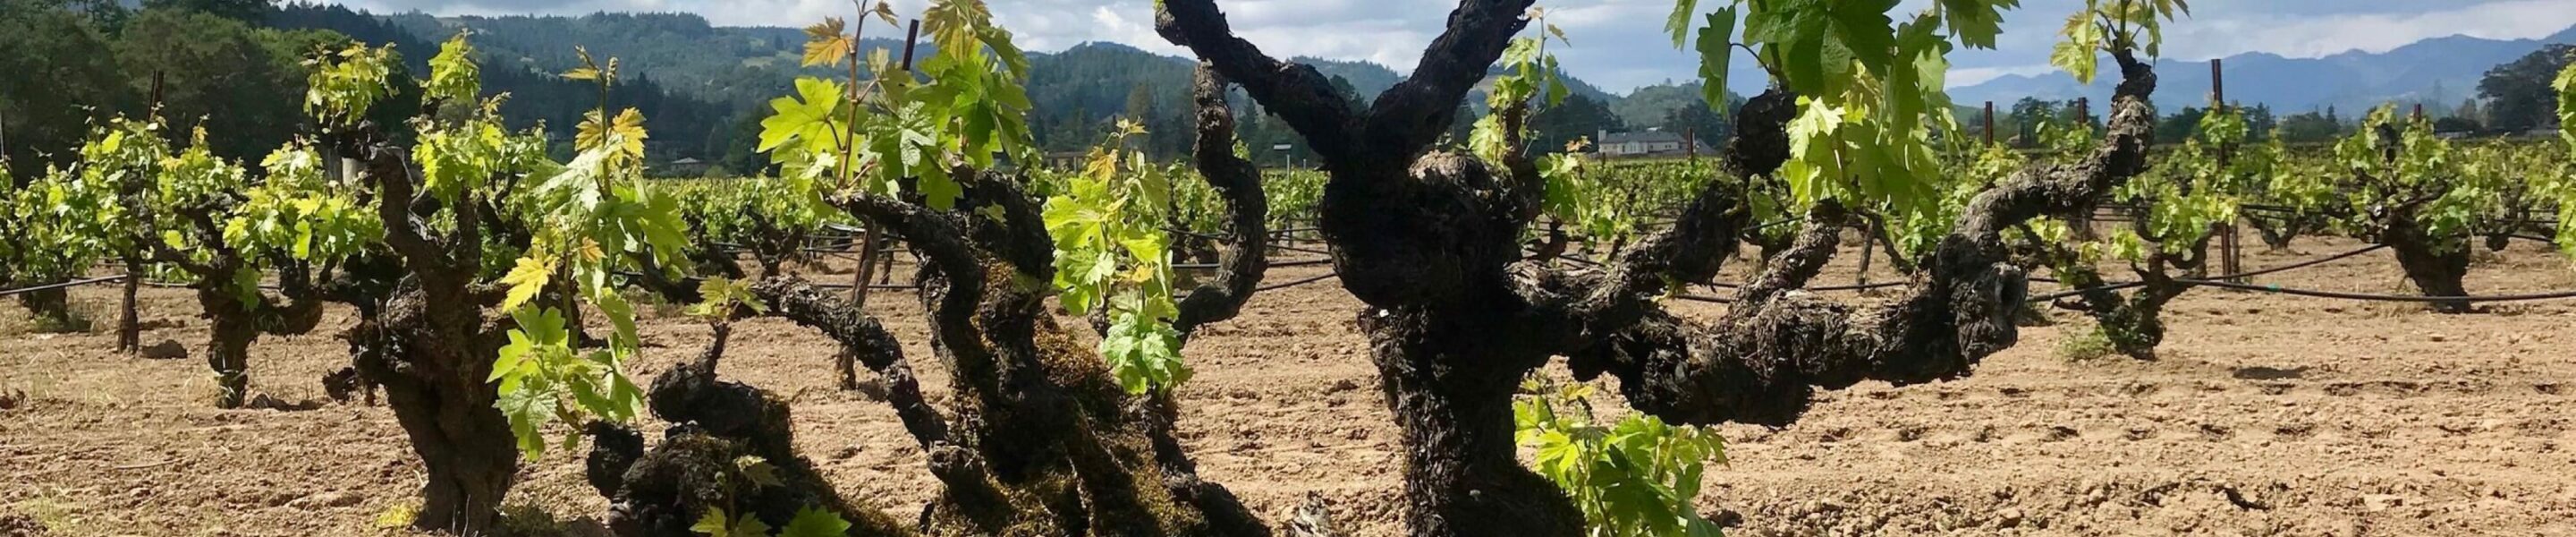 Wat betekent ‘old vine’ in de wijnwereld?